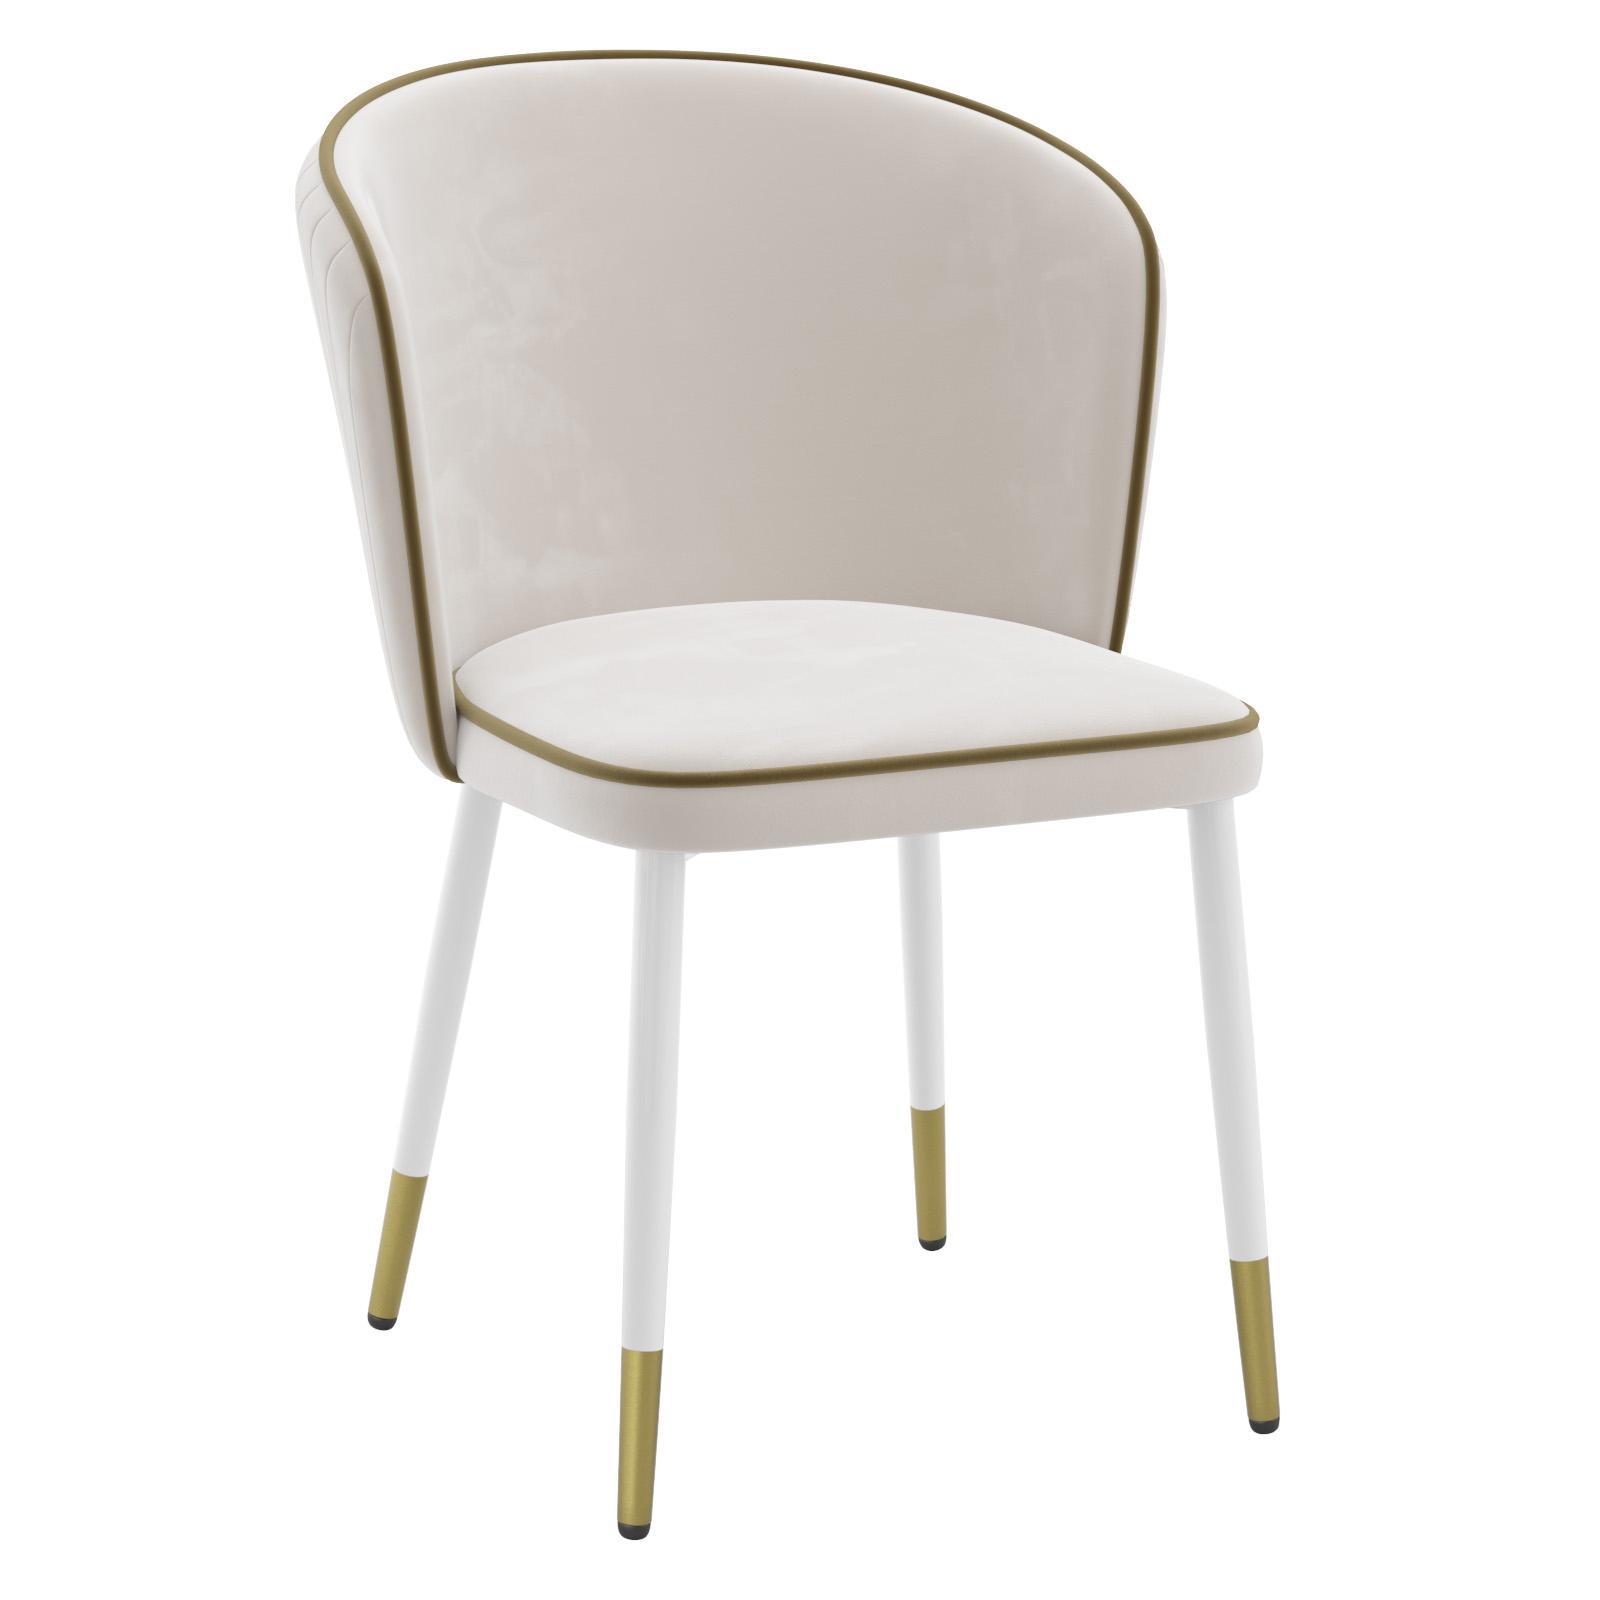 90200446 Кухонный стул 1/4. Б/З мебель для спальни/гостинной цвет бежевый Оникс STLM-0130727 MILAVIO